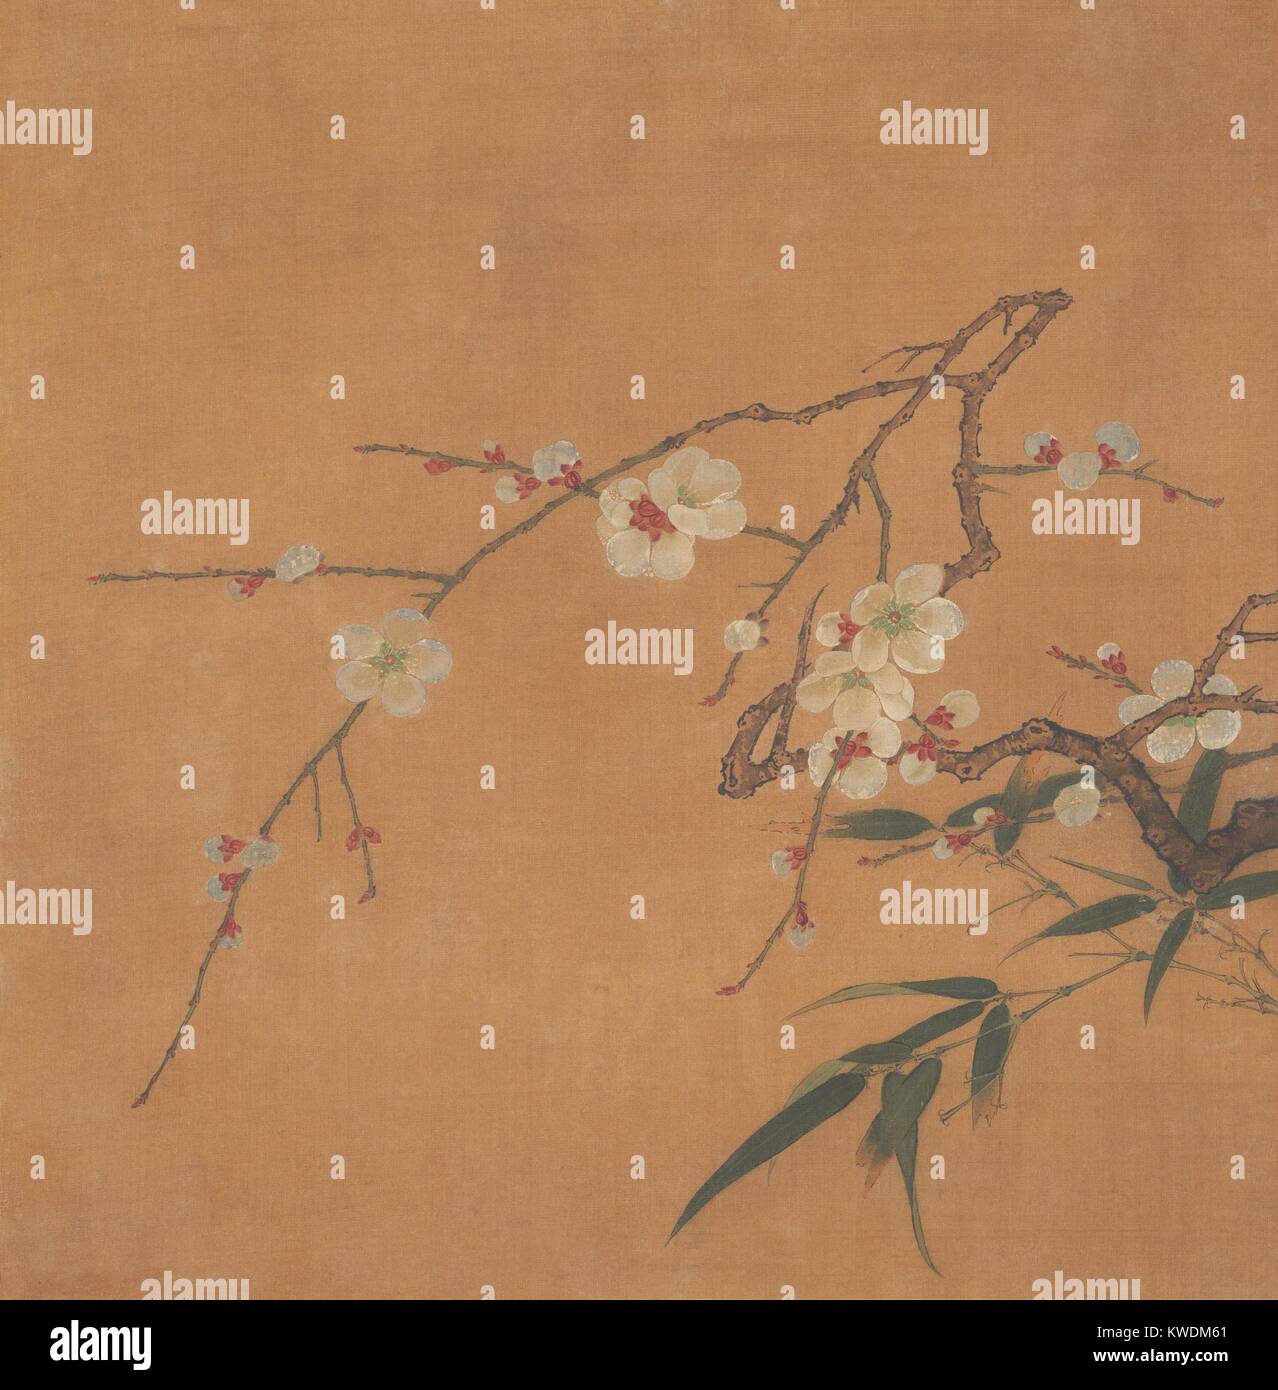 La floraison de prune et de bambou, Chinois, 17e ch., peinture, feuille d'album, encre, couleur sur soie. Les branches de fleurs et feuilles sont peints dans un style réaliste délicat. Des fleurs ont été l'un des principaux sujets de la peinture traditionnelle chinoise (BSLOC___2017 16 10) Banque D'Images